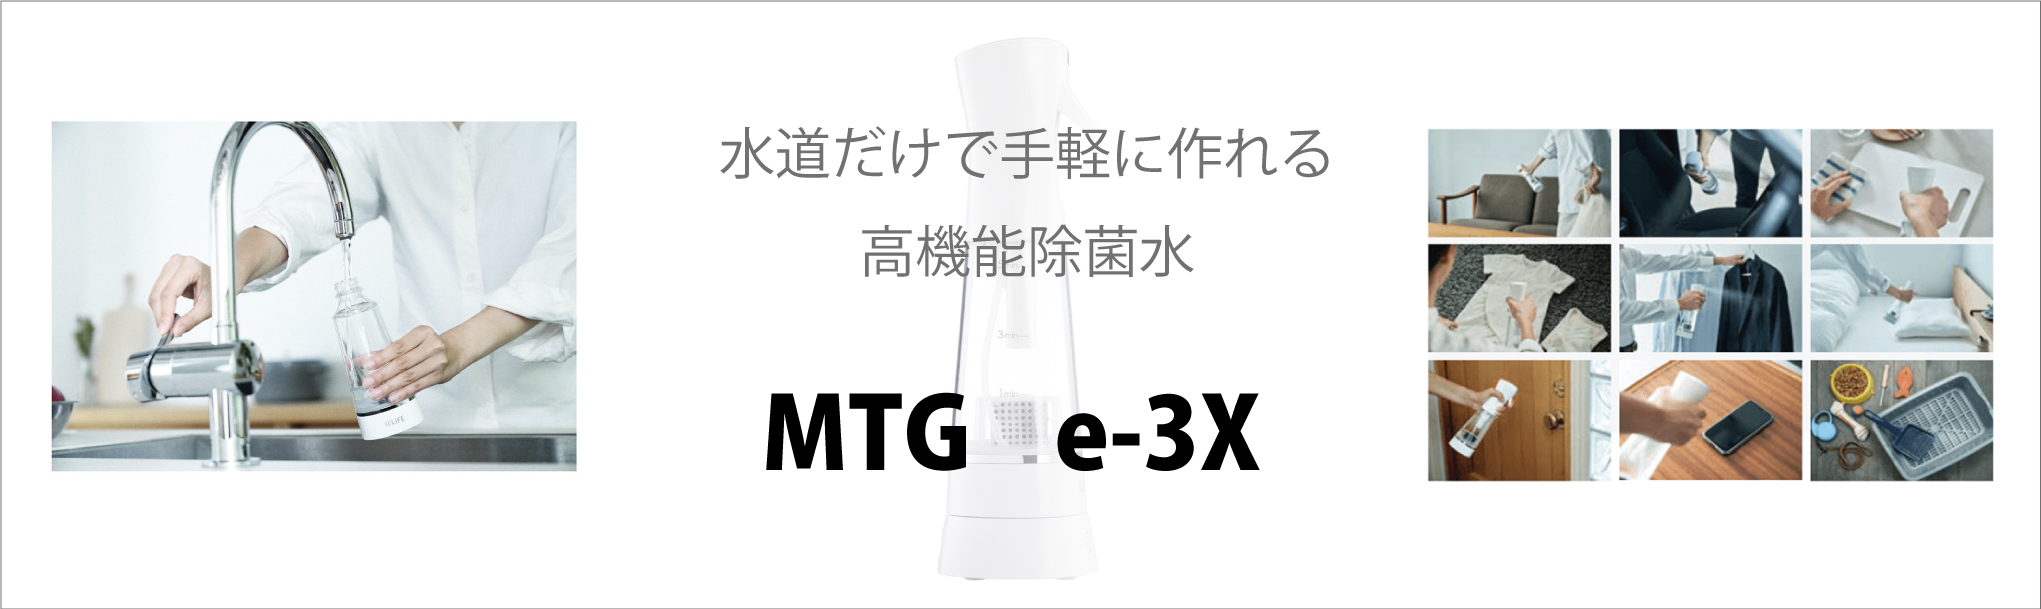 水道だけで手軽に作れる高機能除菌水 MTG e-3X